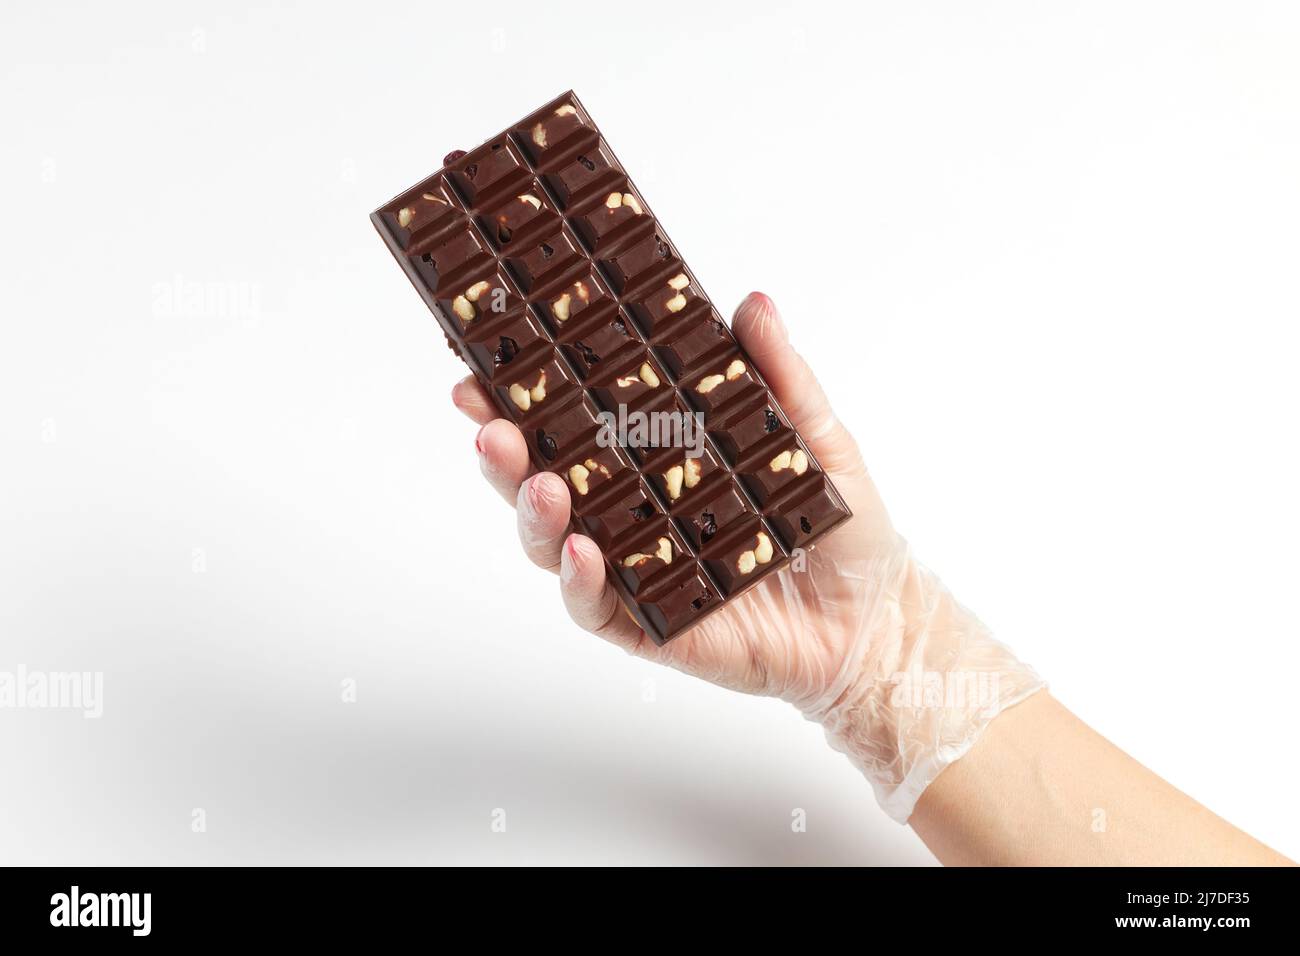 Apetitoso bar de chocolate con relleno de frutos secos en la mano del confitero Foto de stock